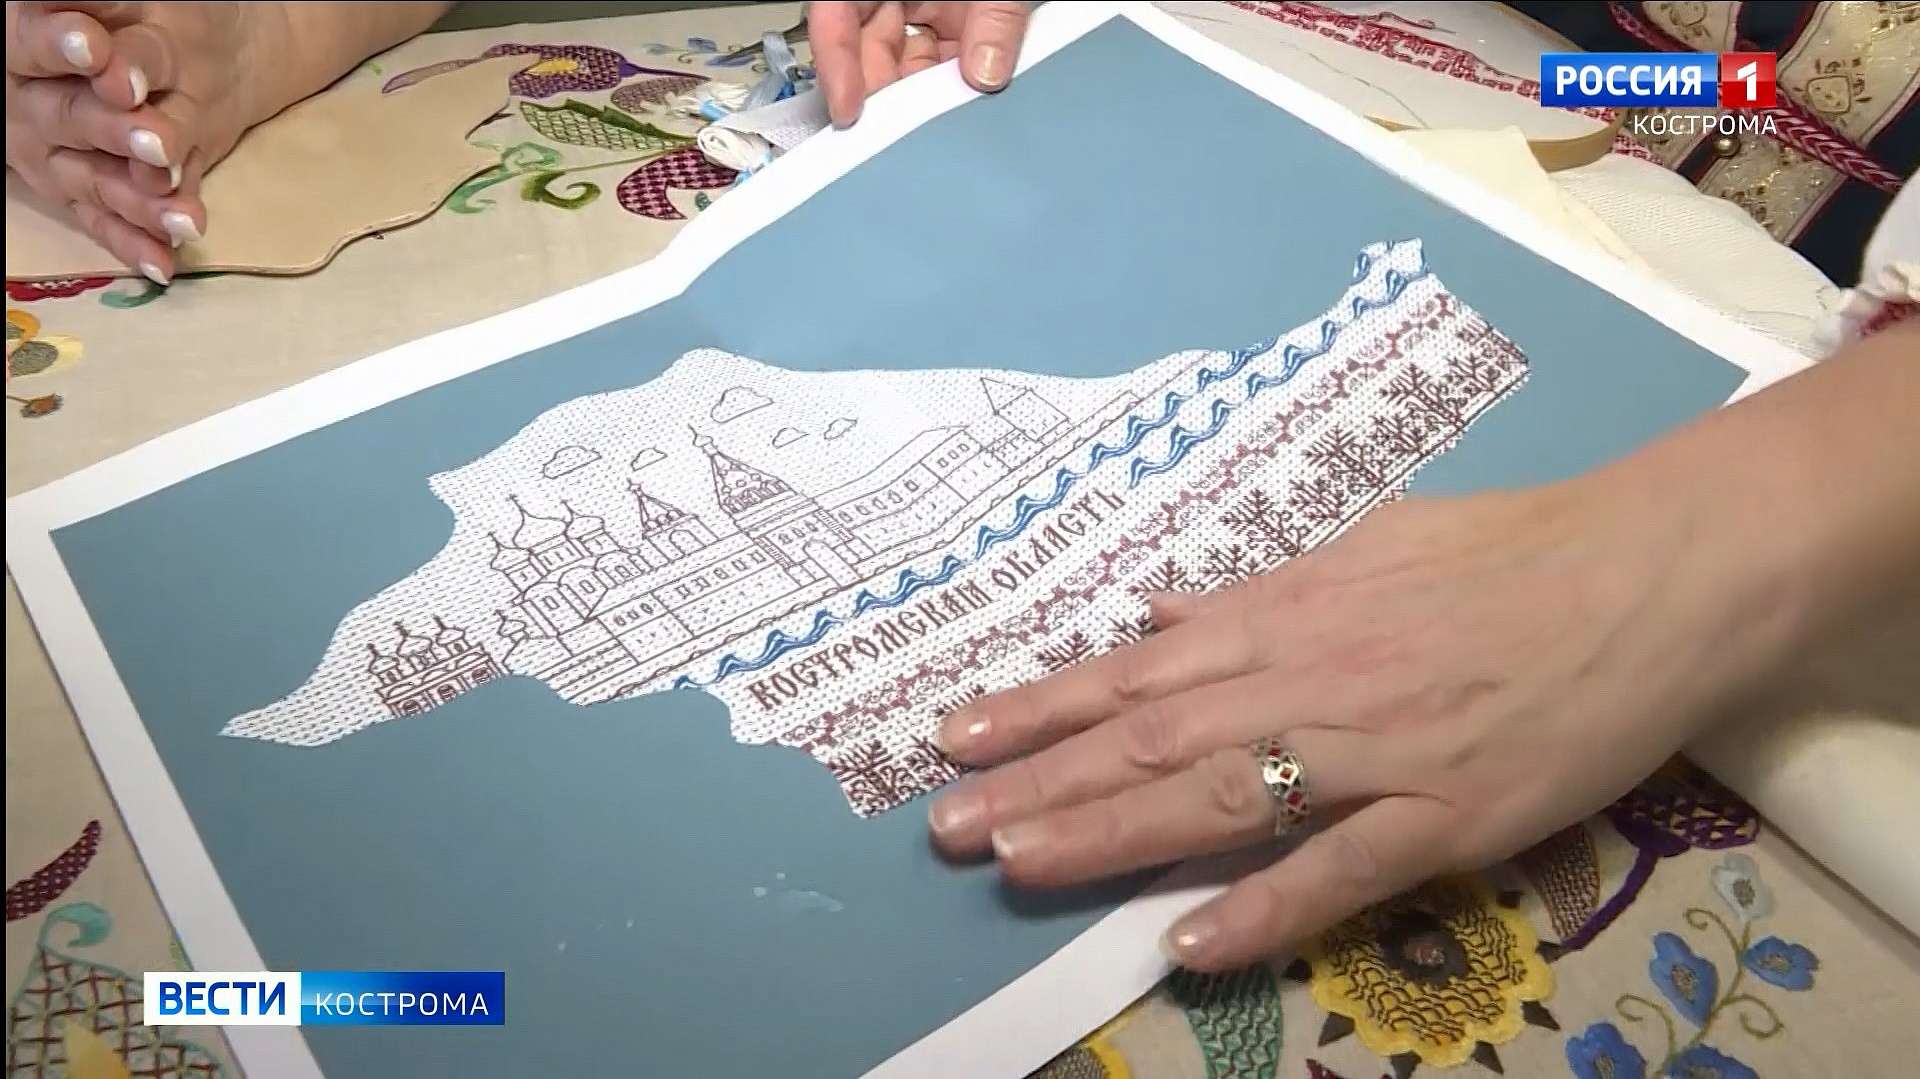 Рукодельницы взялись вышить карту Костромы красными и золотыми нитями